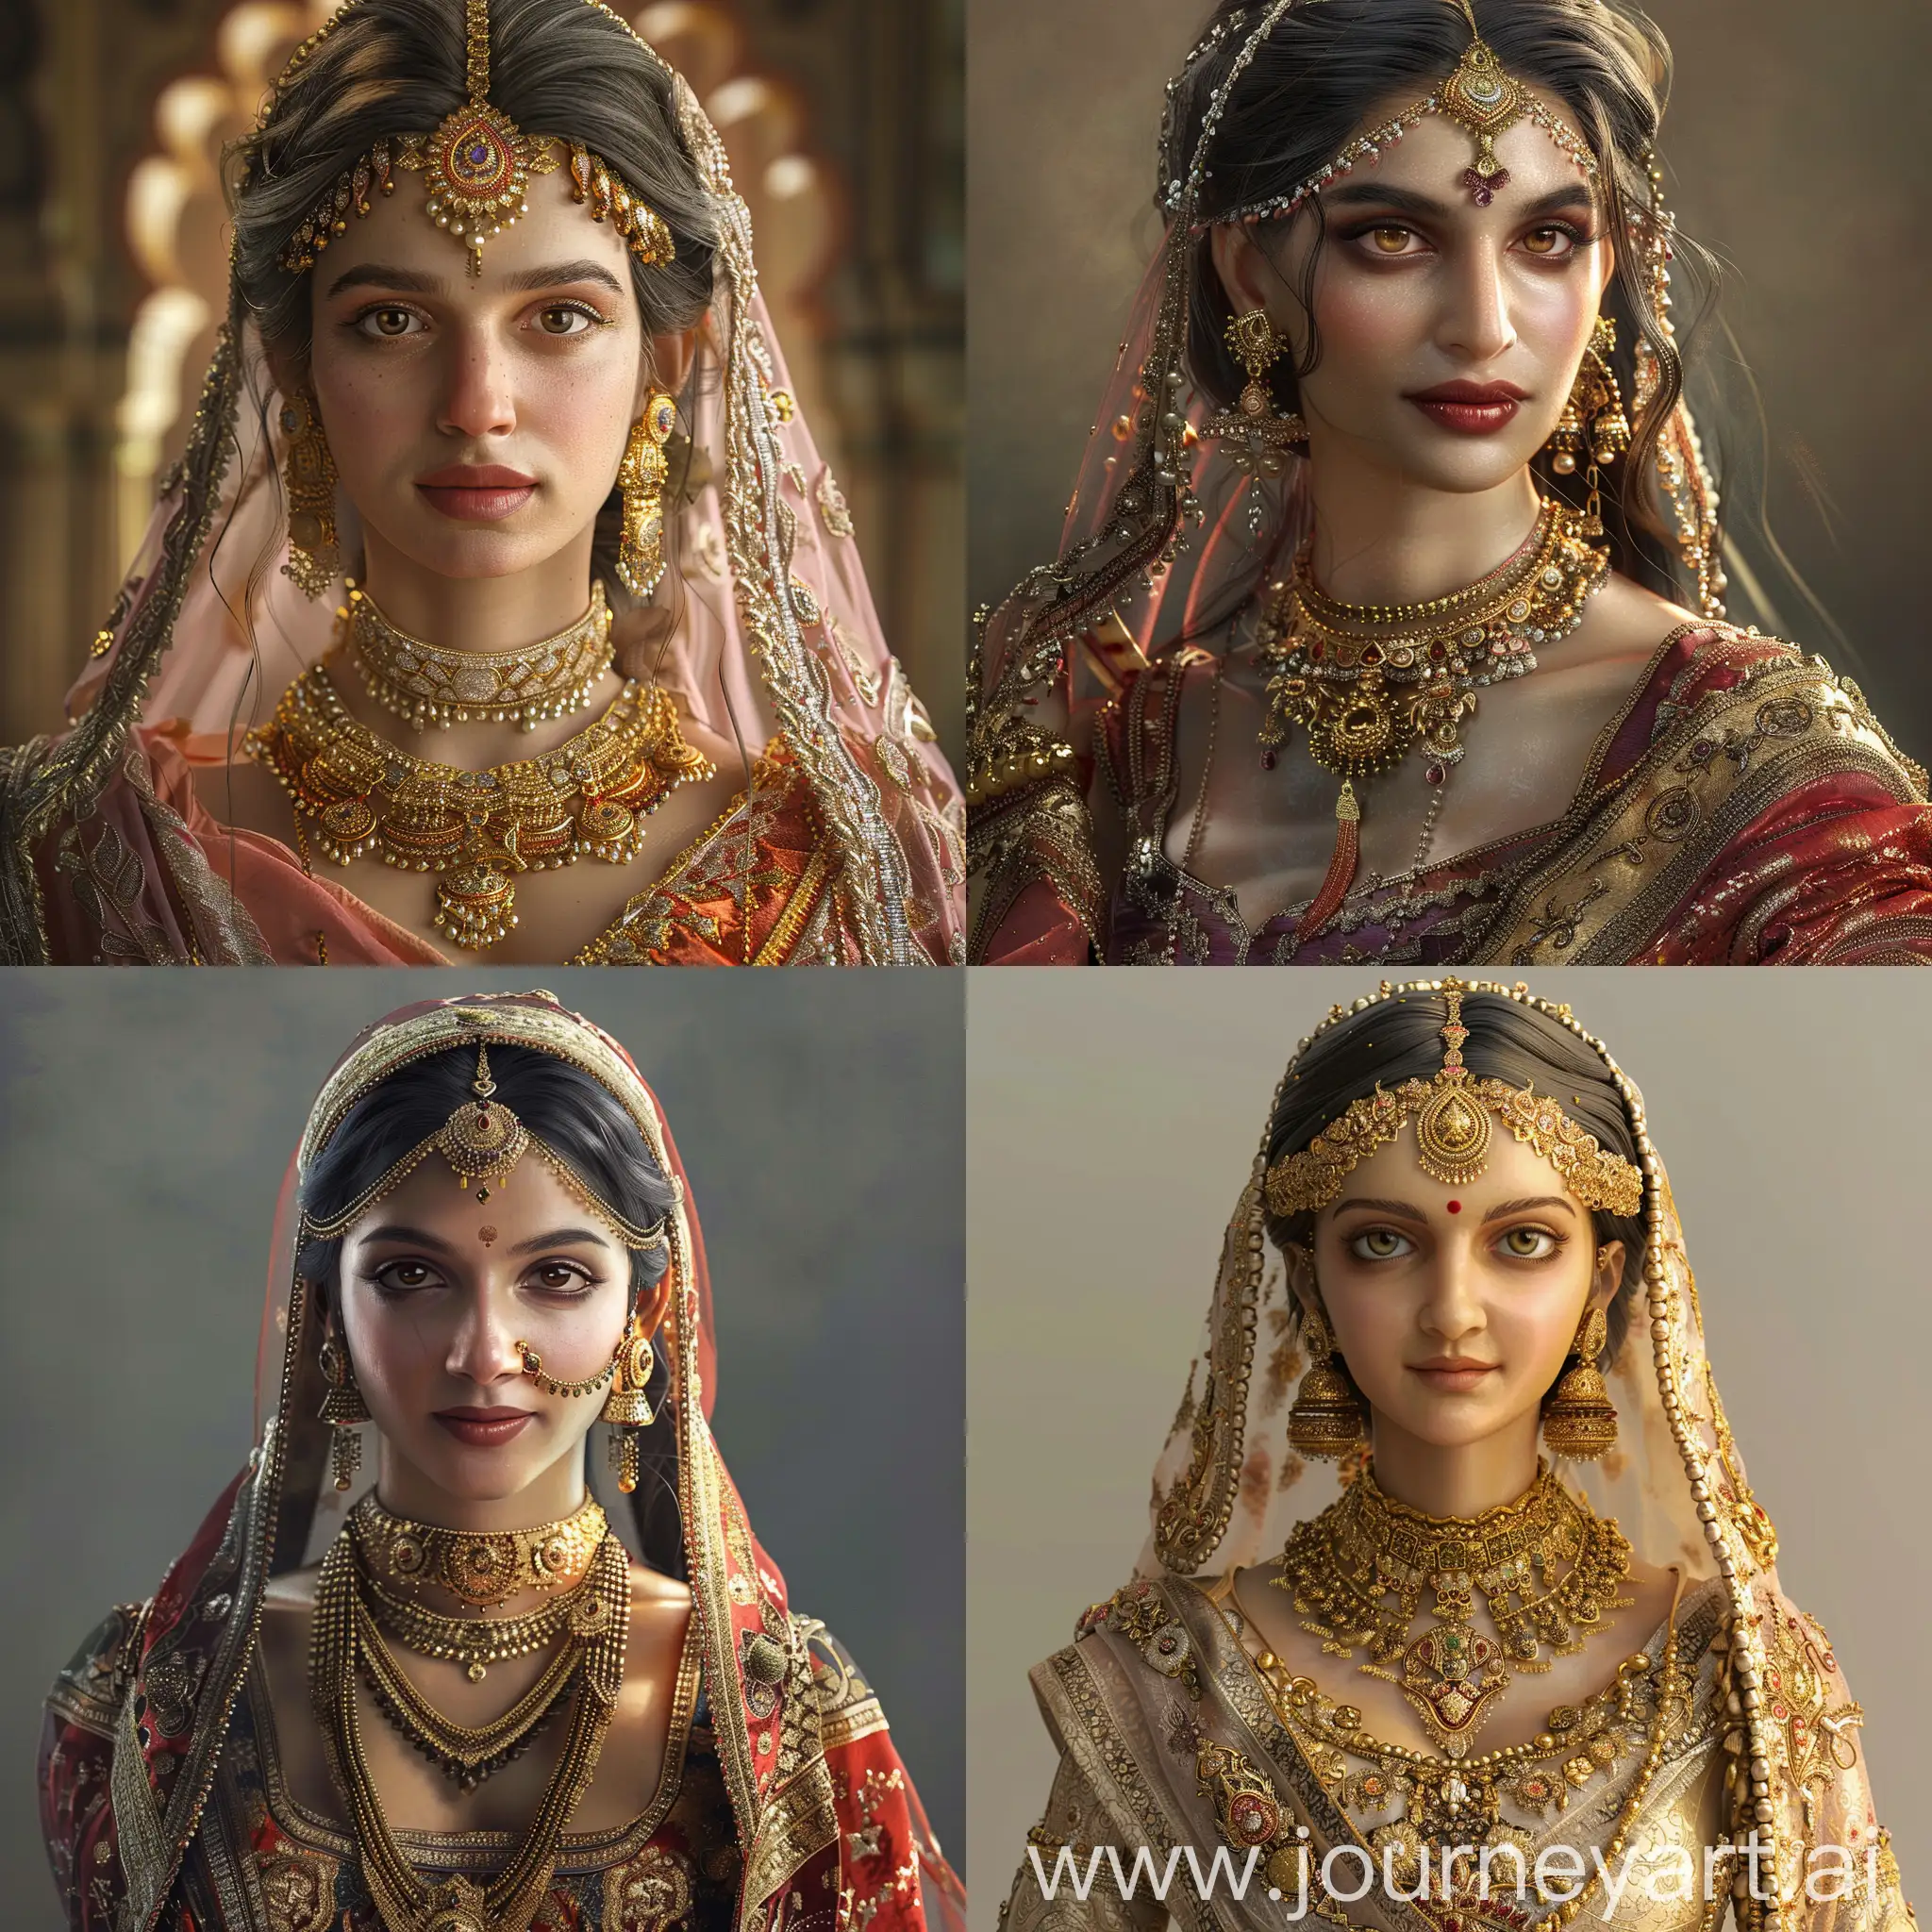 Photorealistic Portrayal Of Shree Rajput Padmavati In Royal Rajasthani Attire Midjourney Prompt